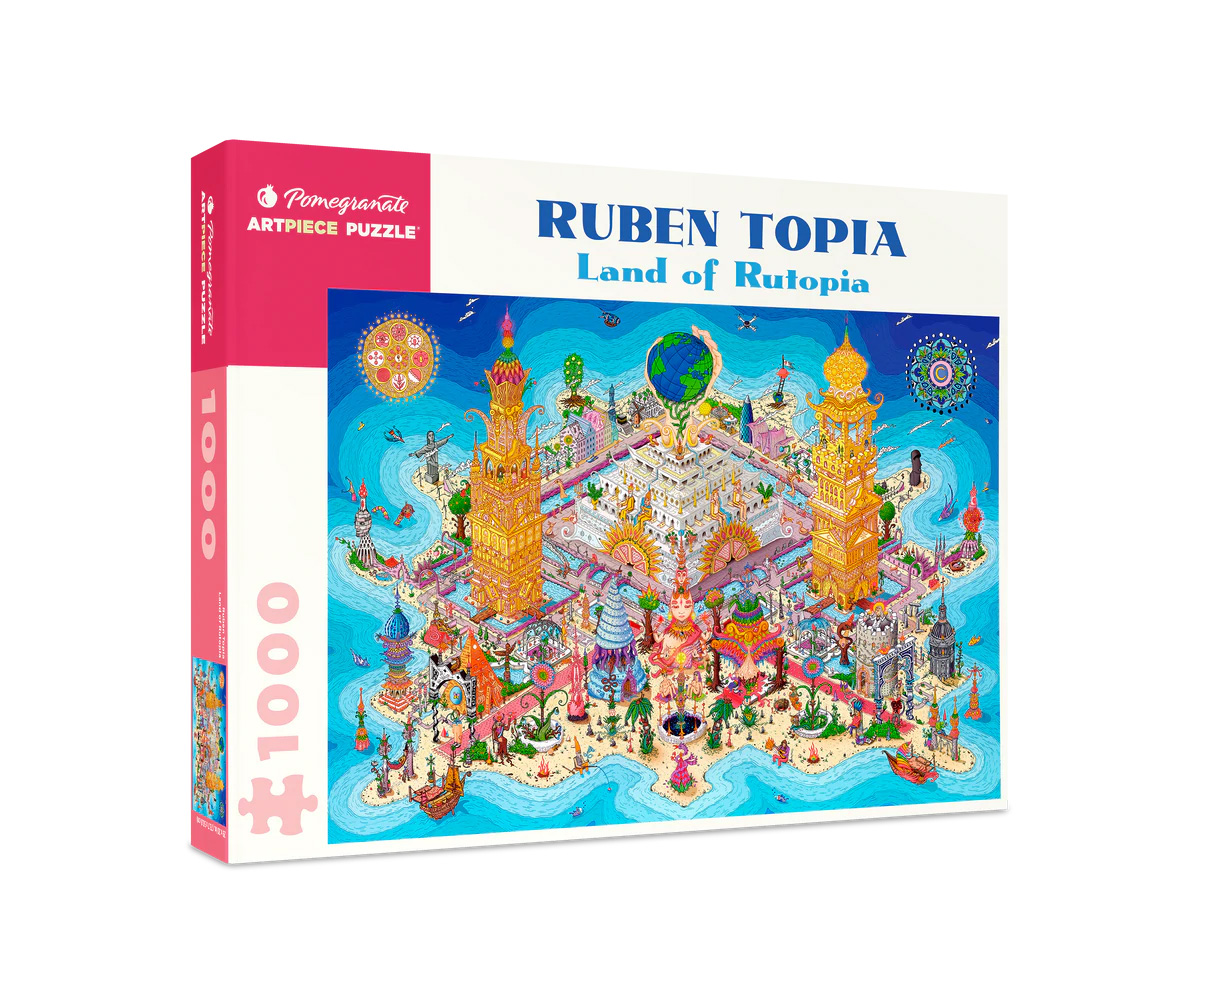 Land of Rutopia by Ruben Topia